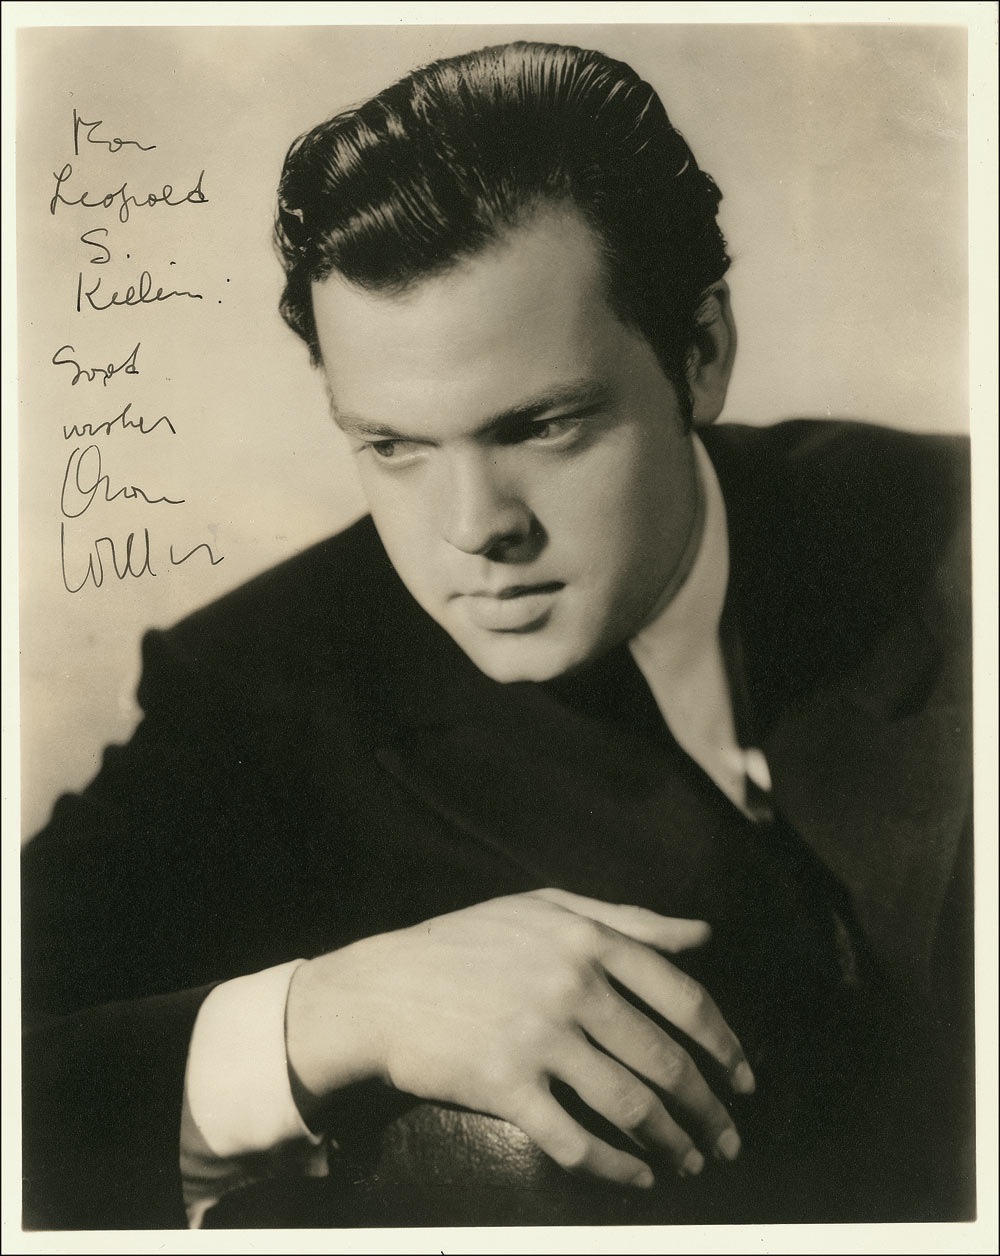 Lot #1062 Orson Welles